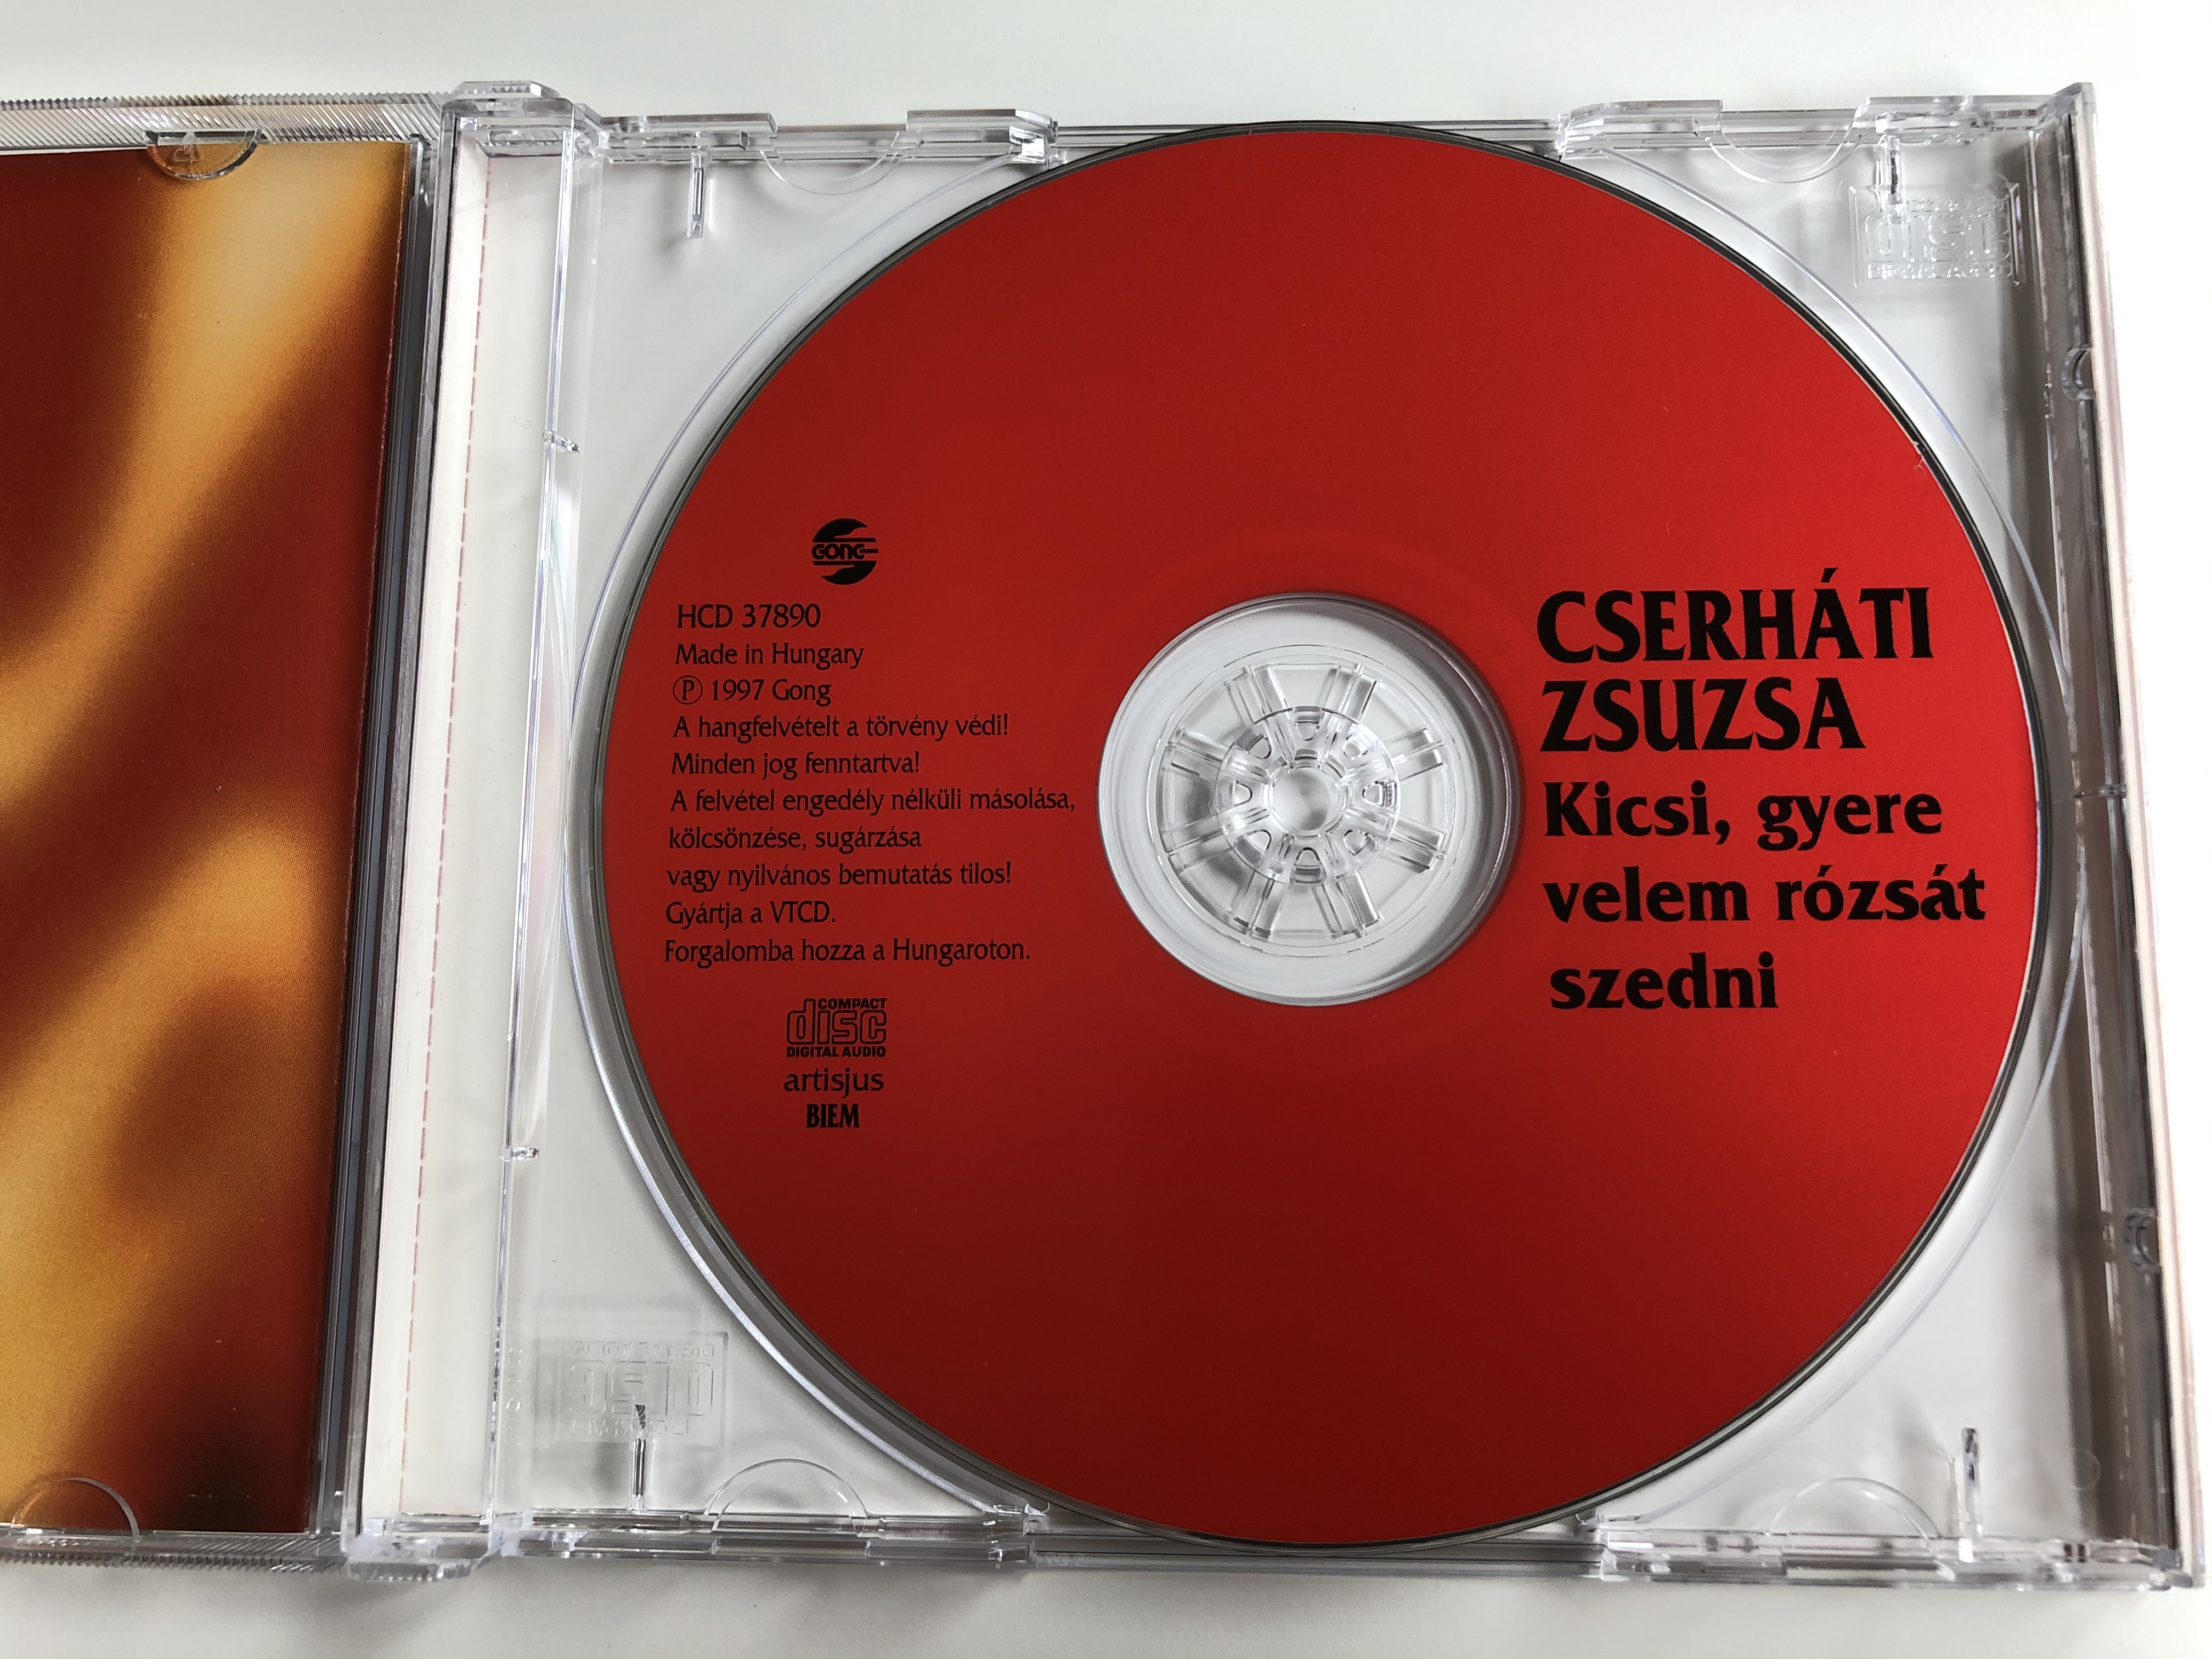 cserh-ti-zsuzsa-kicsi-gyere-velem-r-zs-t-szedni-valogatas-archiv-felvetelek-gong-audio-cd-1997-hcd-37890-4-.jpg